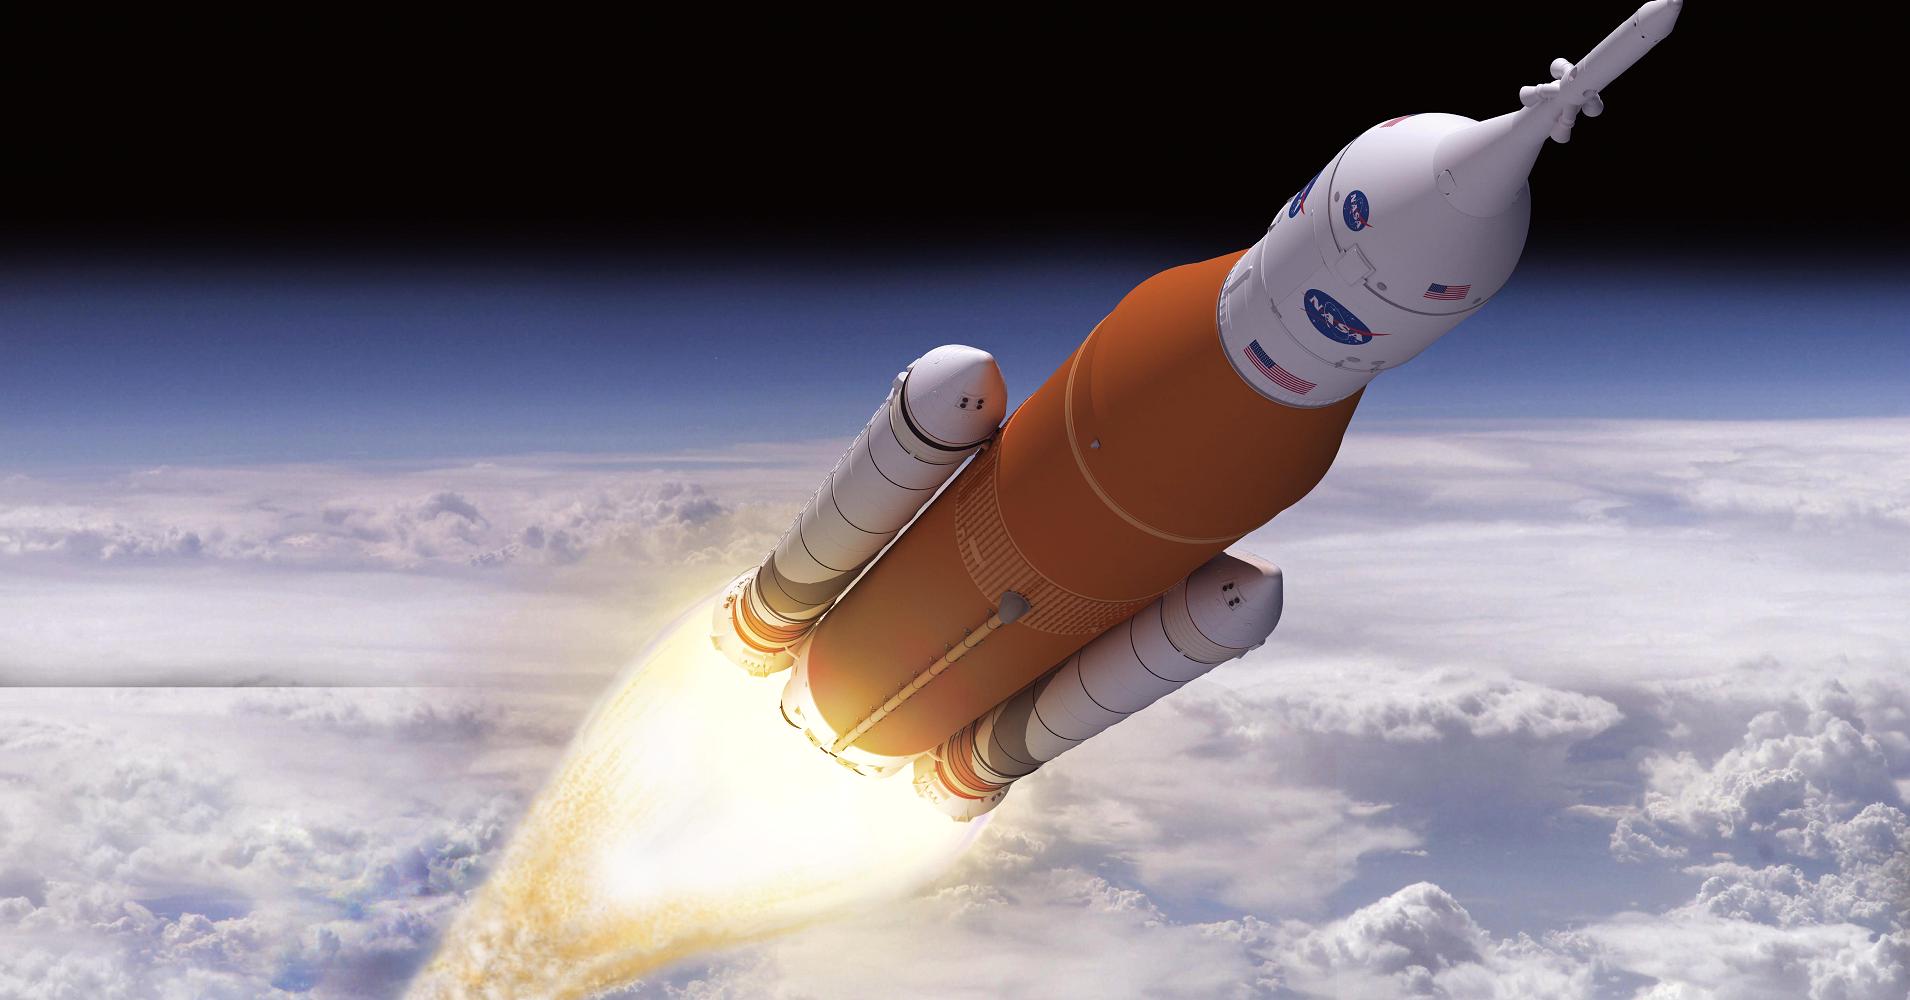 Boeing beabsichtigt zu überholen SpaceX und die ersten Menschen landen auf dem mars